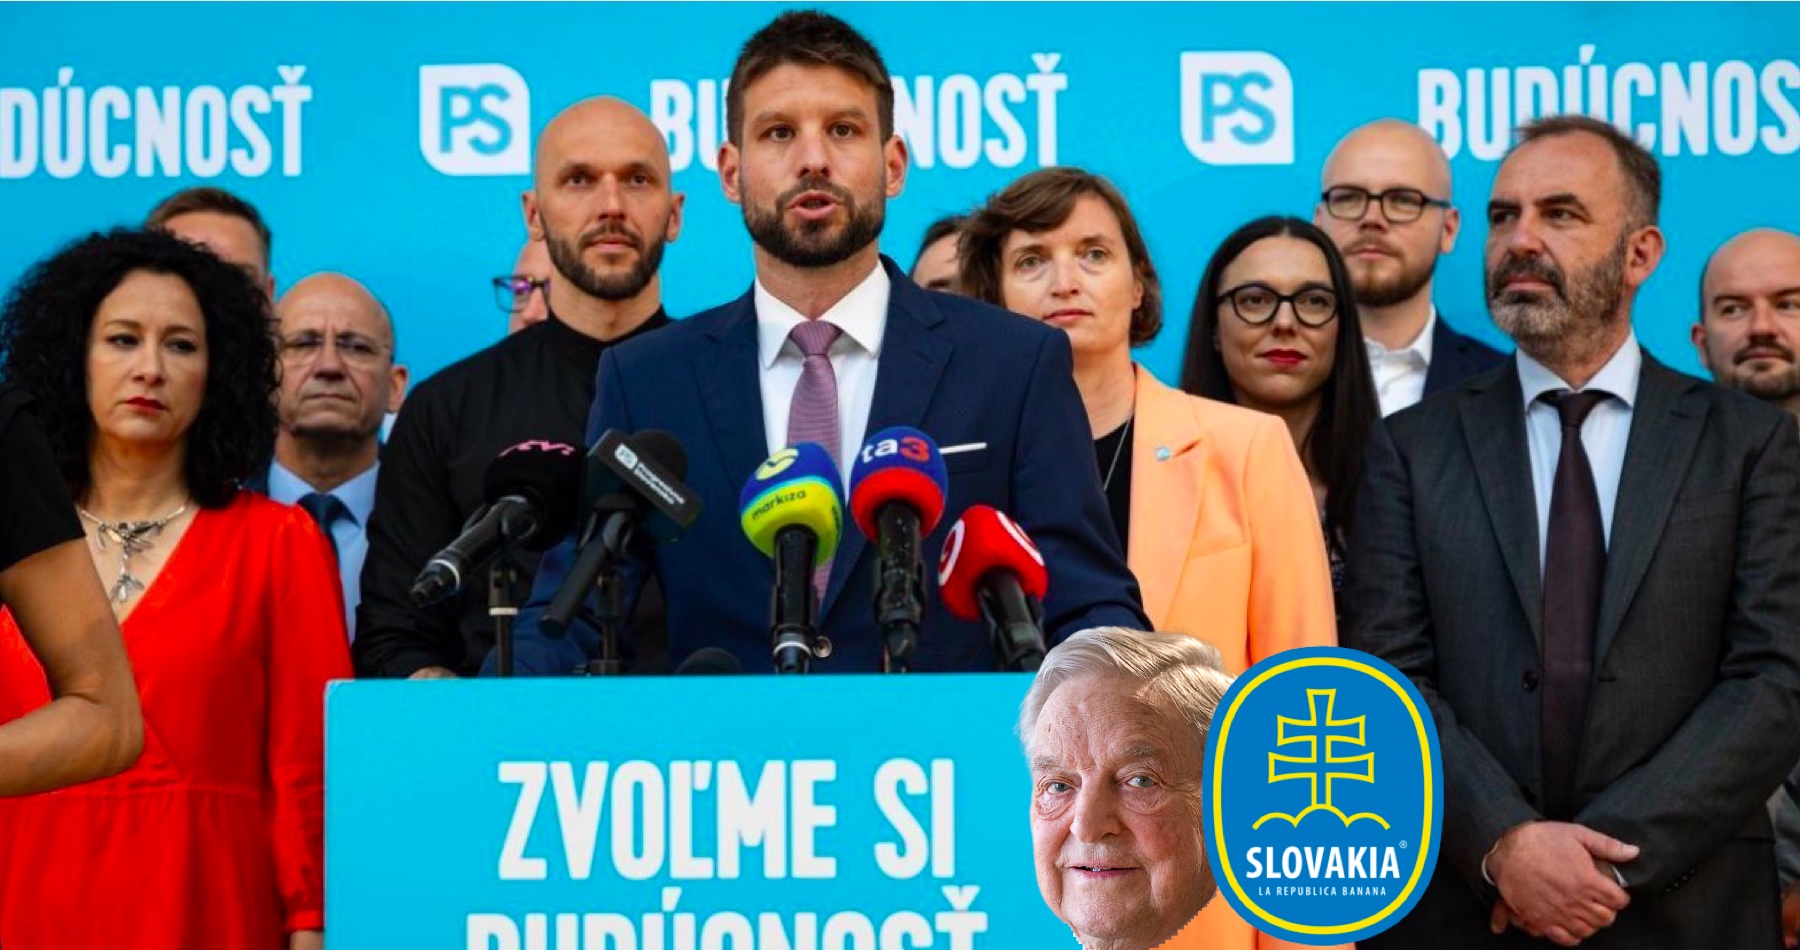 VIDEO: Finálny zoznam expertov Progresívneho Slovenska odhodlaných dokončiť skazu Slovenskej republiky (krátka sonda do myšlienkového & mentálneho sveta progresívcov a ich volebného programu)